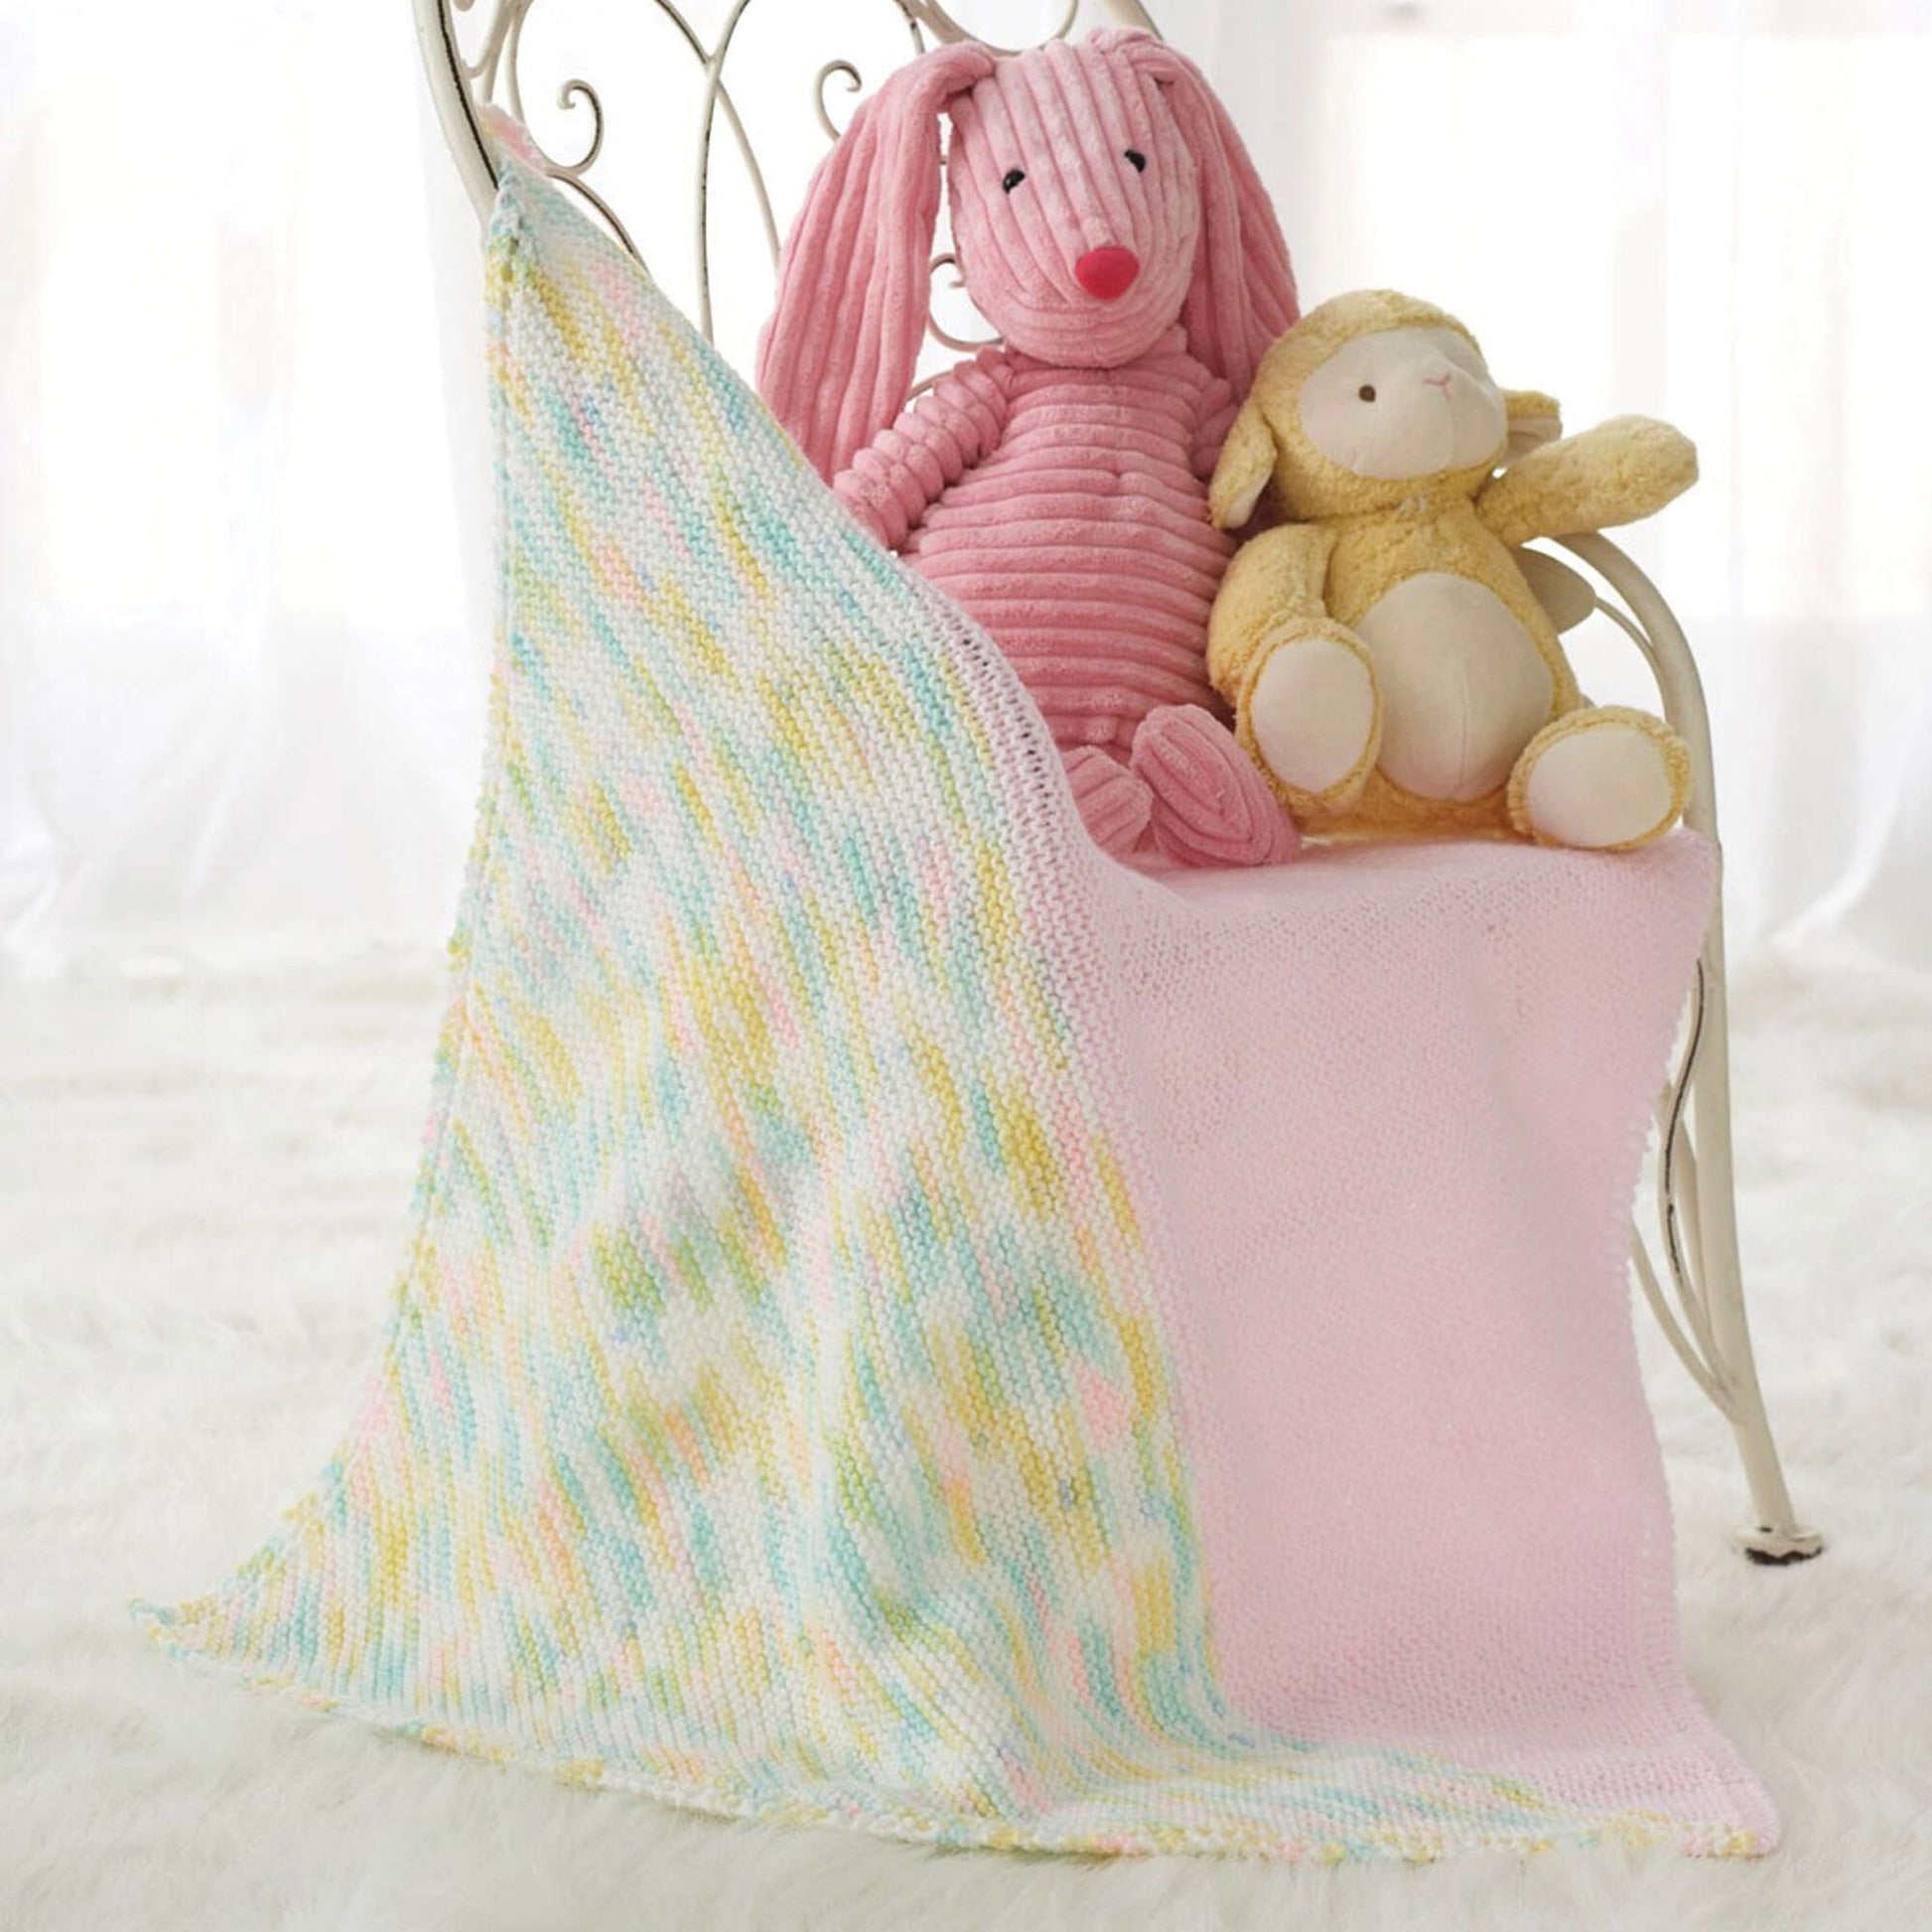 Free Bernat Half & Half Preemie Knit Baby Blanket Pattern